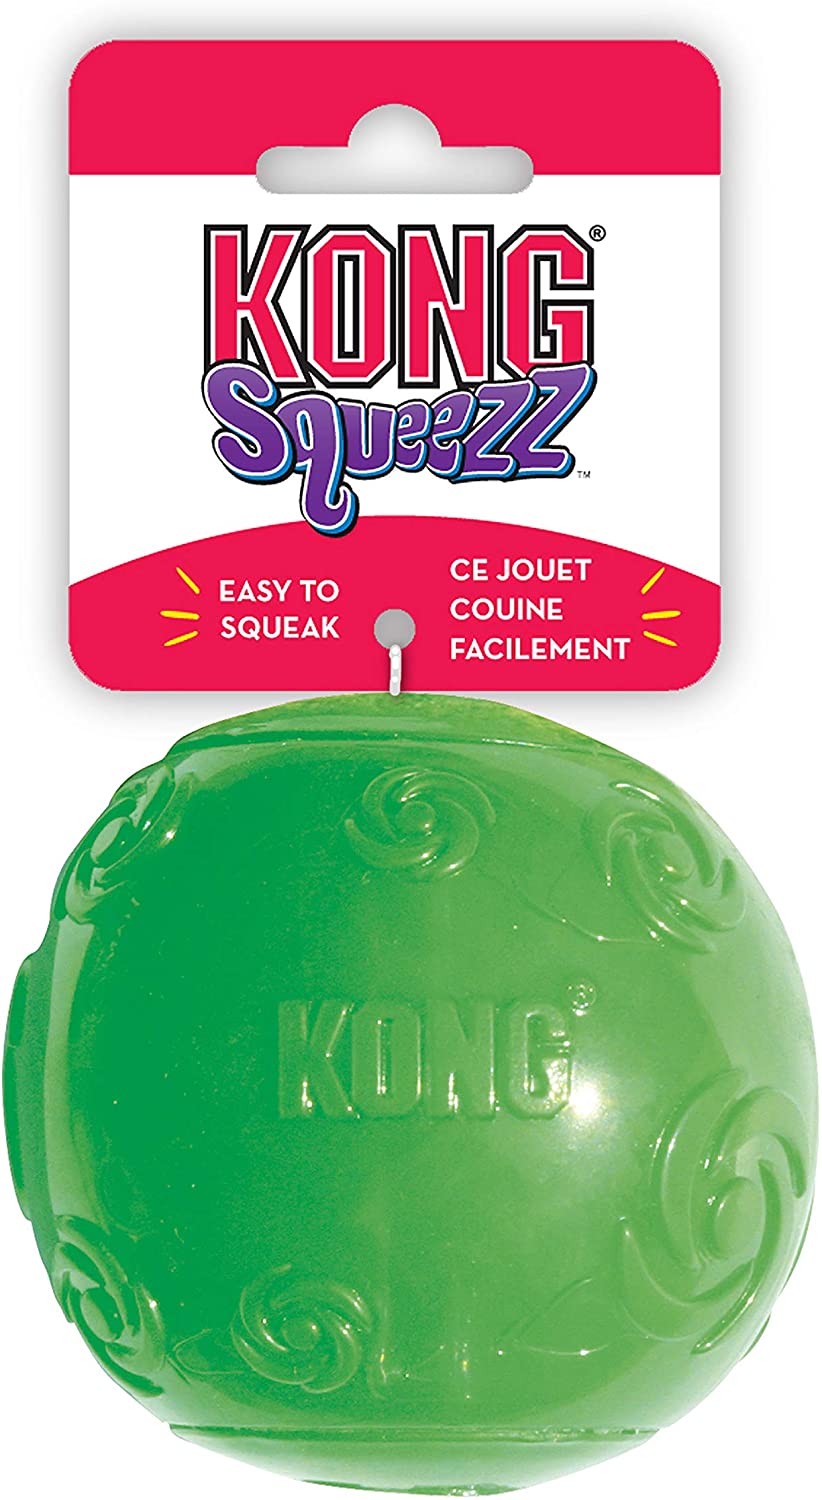  KONG - Squeezz® Ball - Juguete que rebota y suena incluso pinchado - Raza grande (varios colores) 